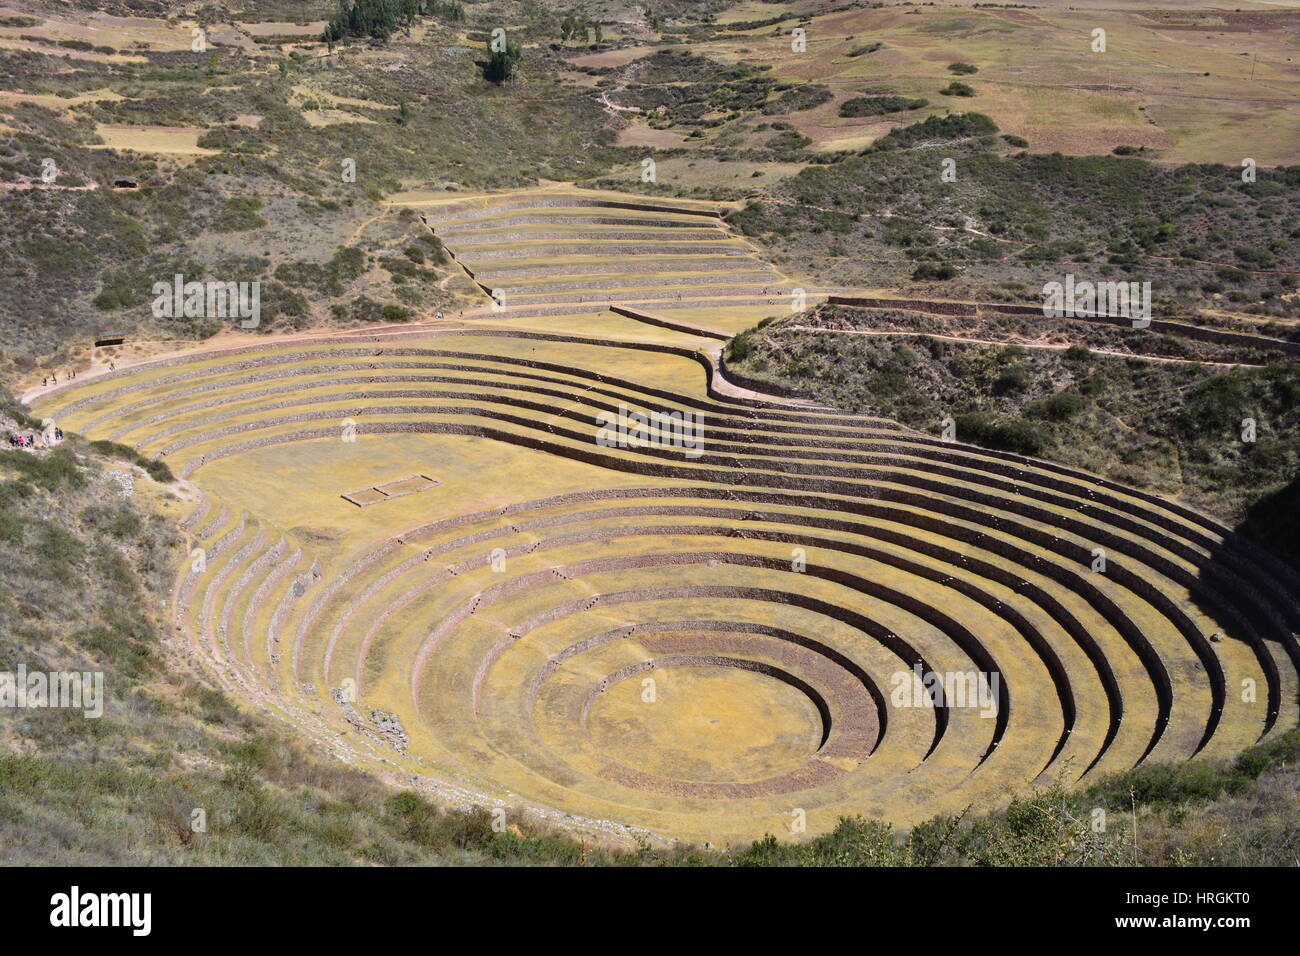 Photo de la murène, un ancien centre havest créé par la civilisation Inca, à Cusco, Pérou Banque D'Images